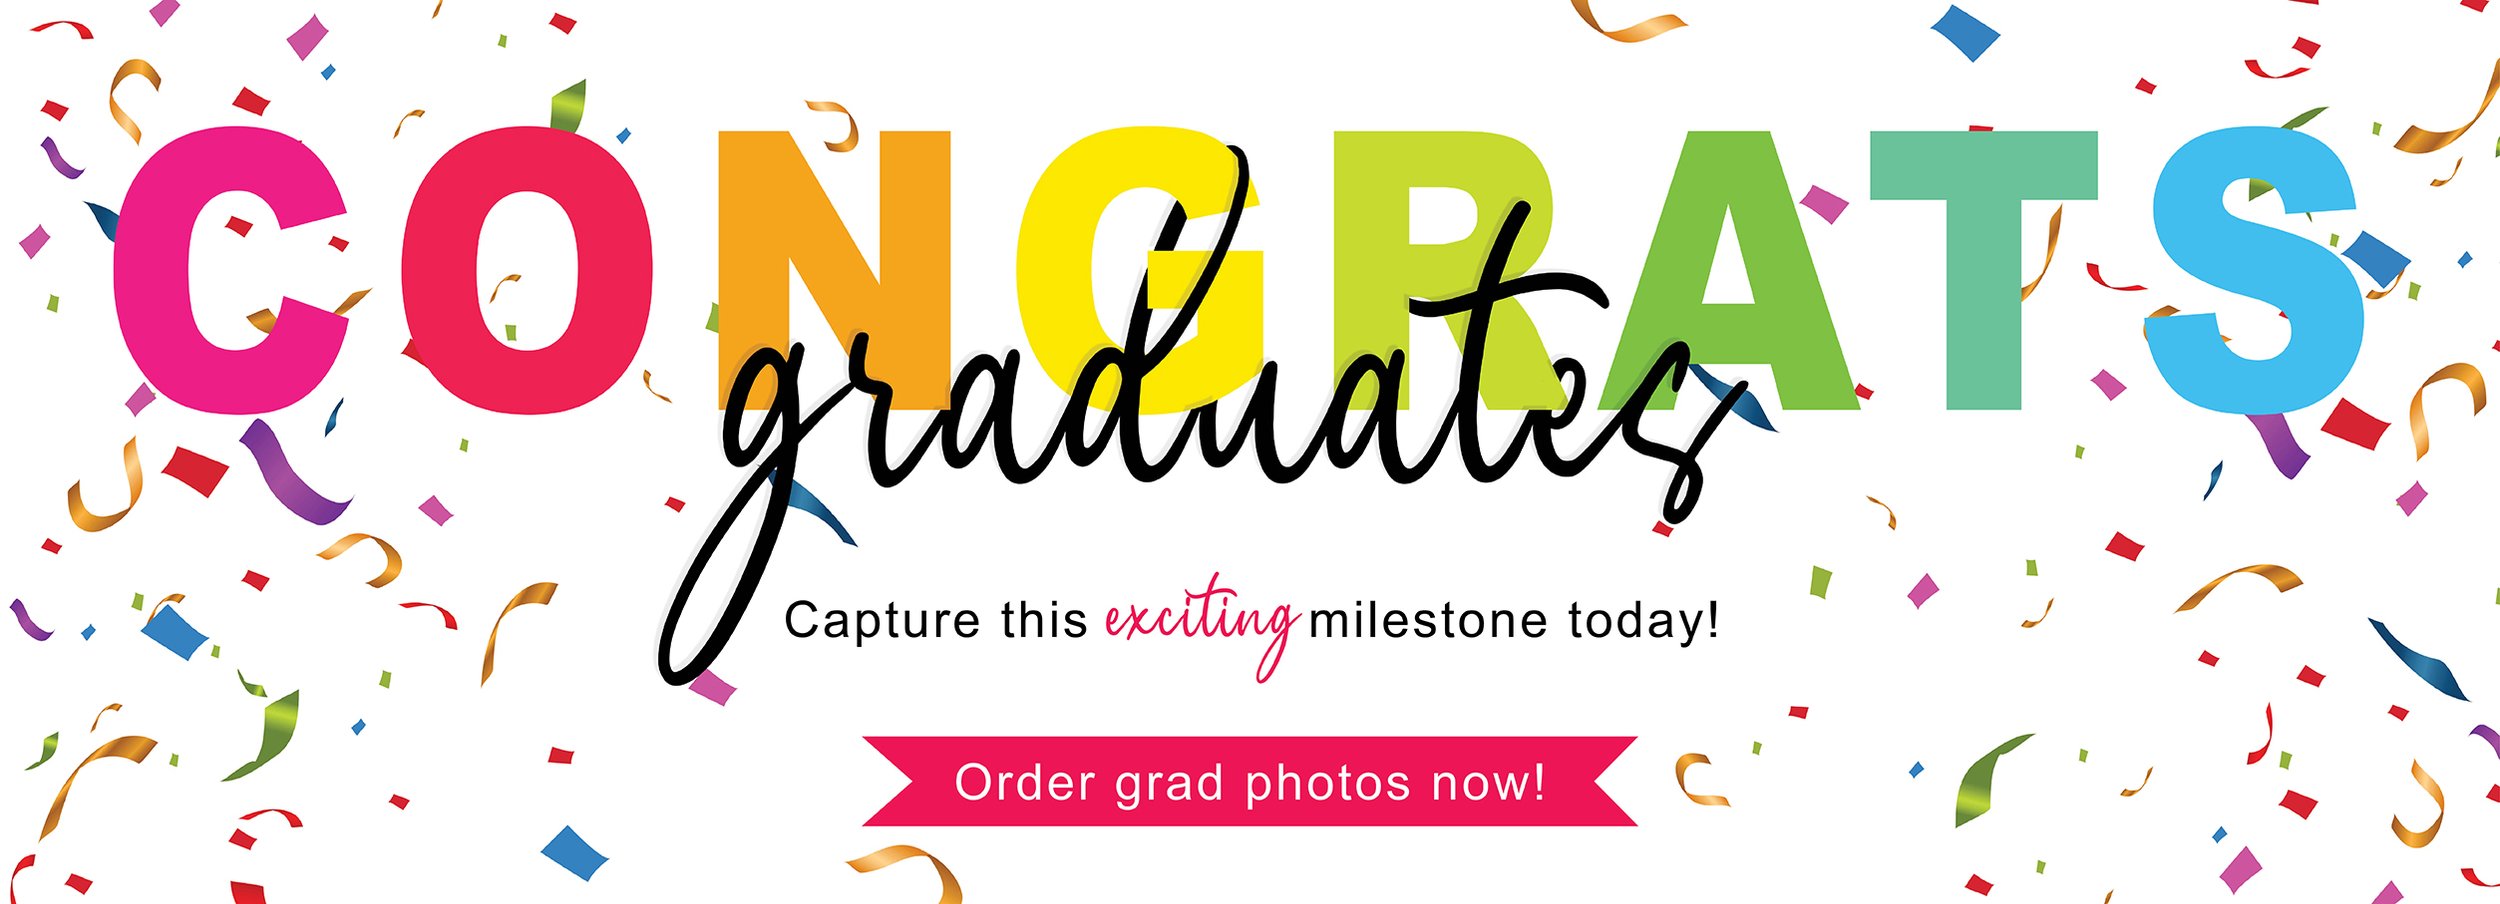 Graduates Website Graphic.jpg